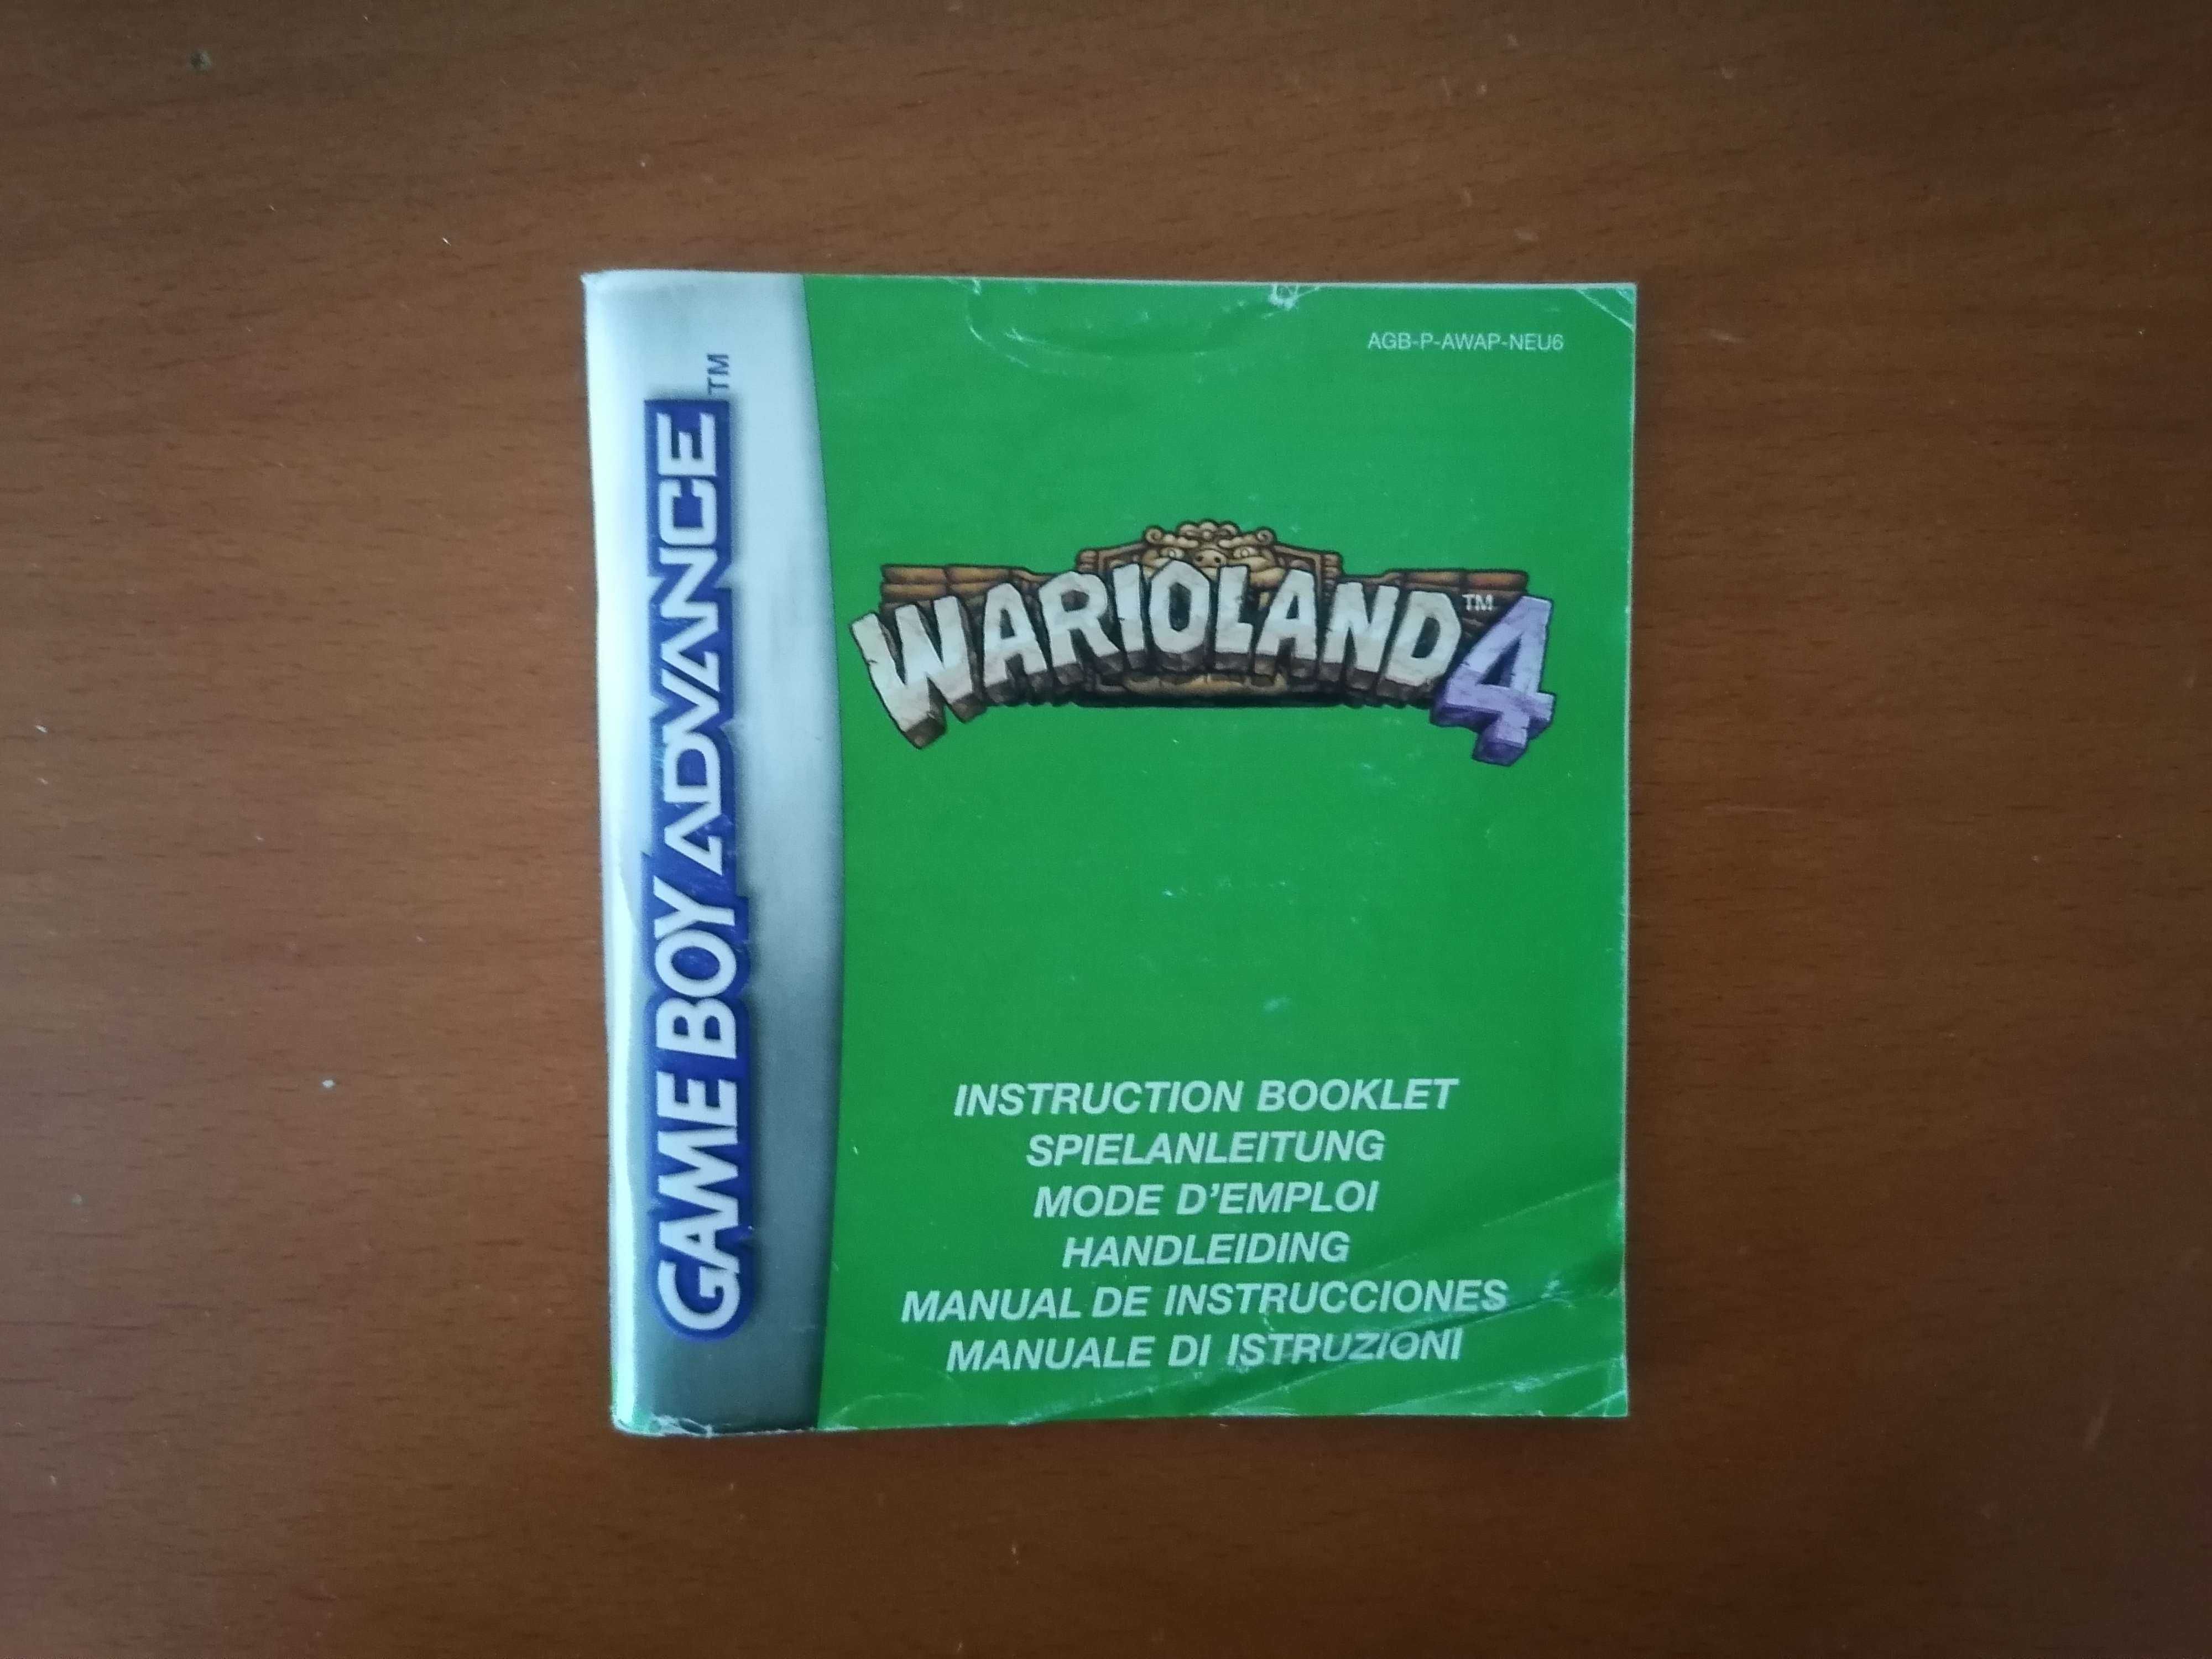 Gameboy Advance Wario Land 4 Jogo Completo Raro Nintendo